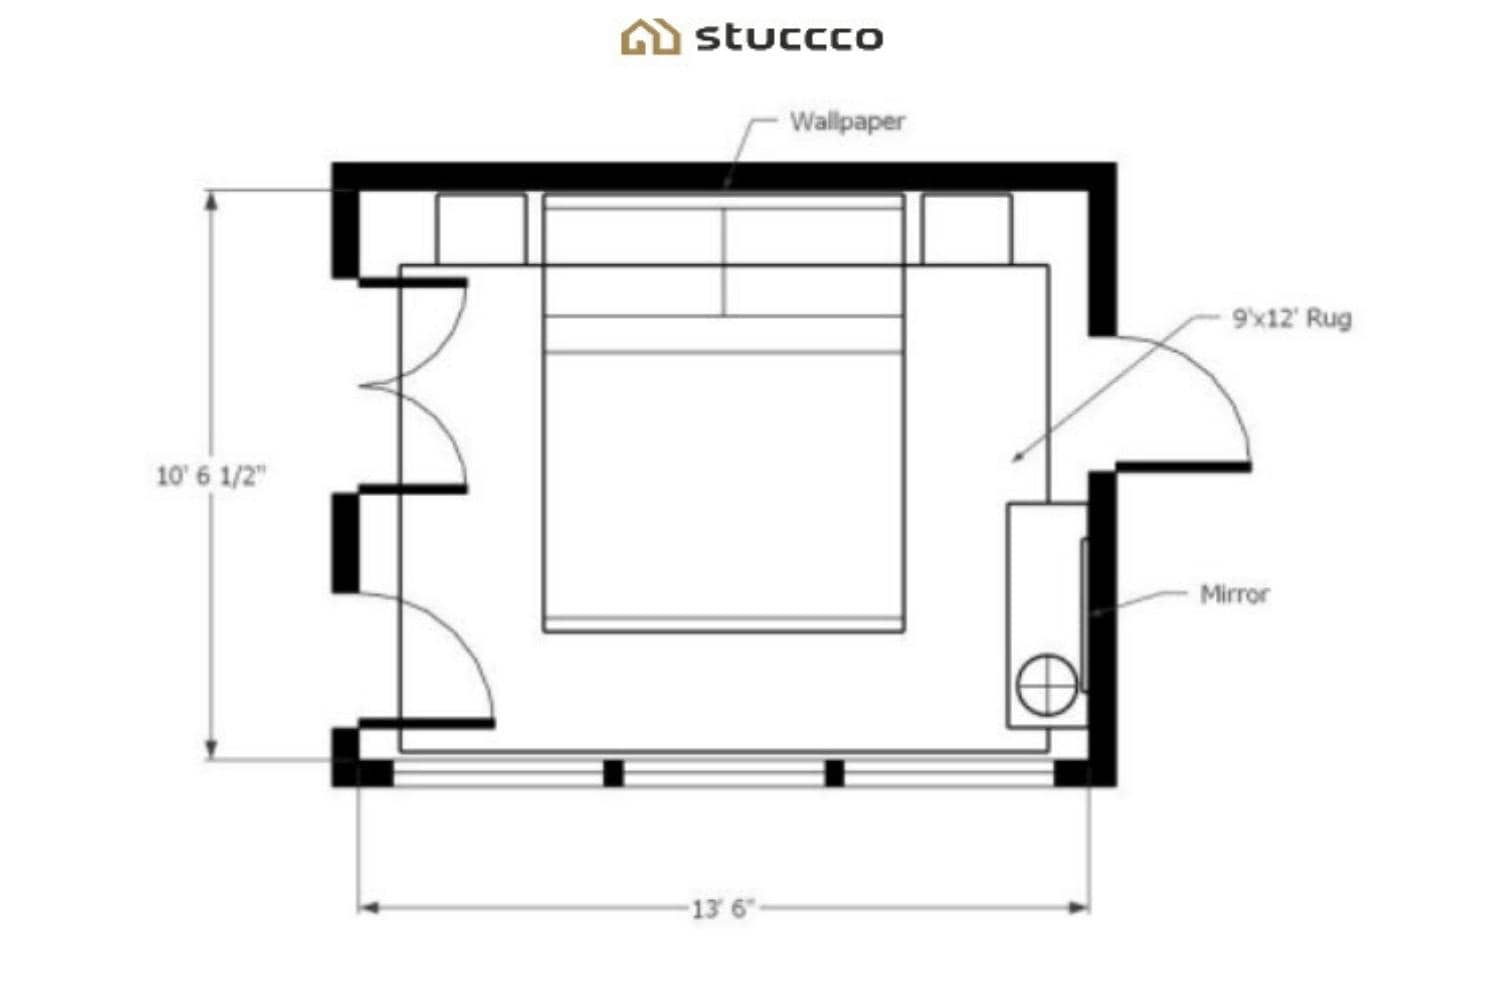 Planning bedroom design floor plan layout